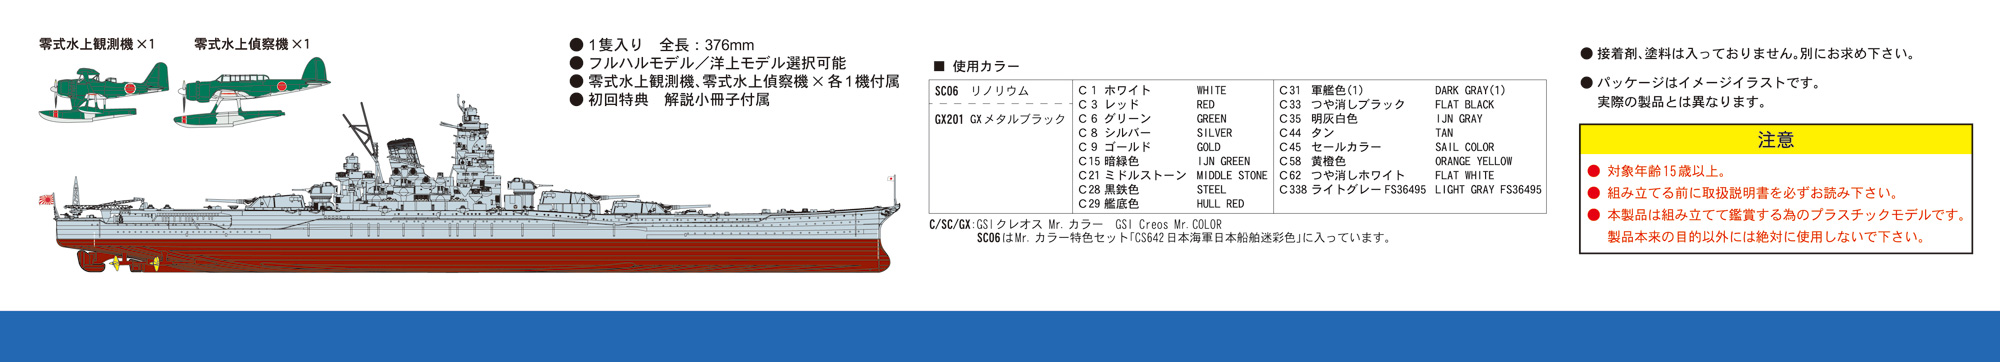 1/700 日本海軍 戦艦 武蔵 レイテ沖海戦時